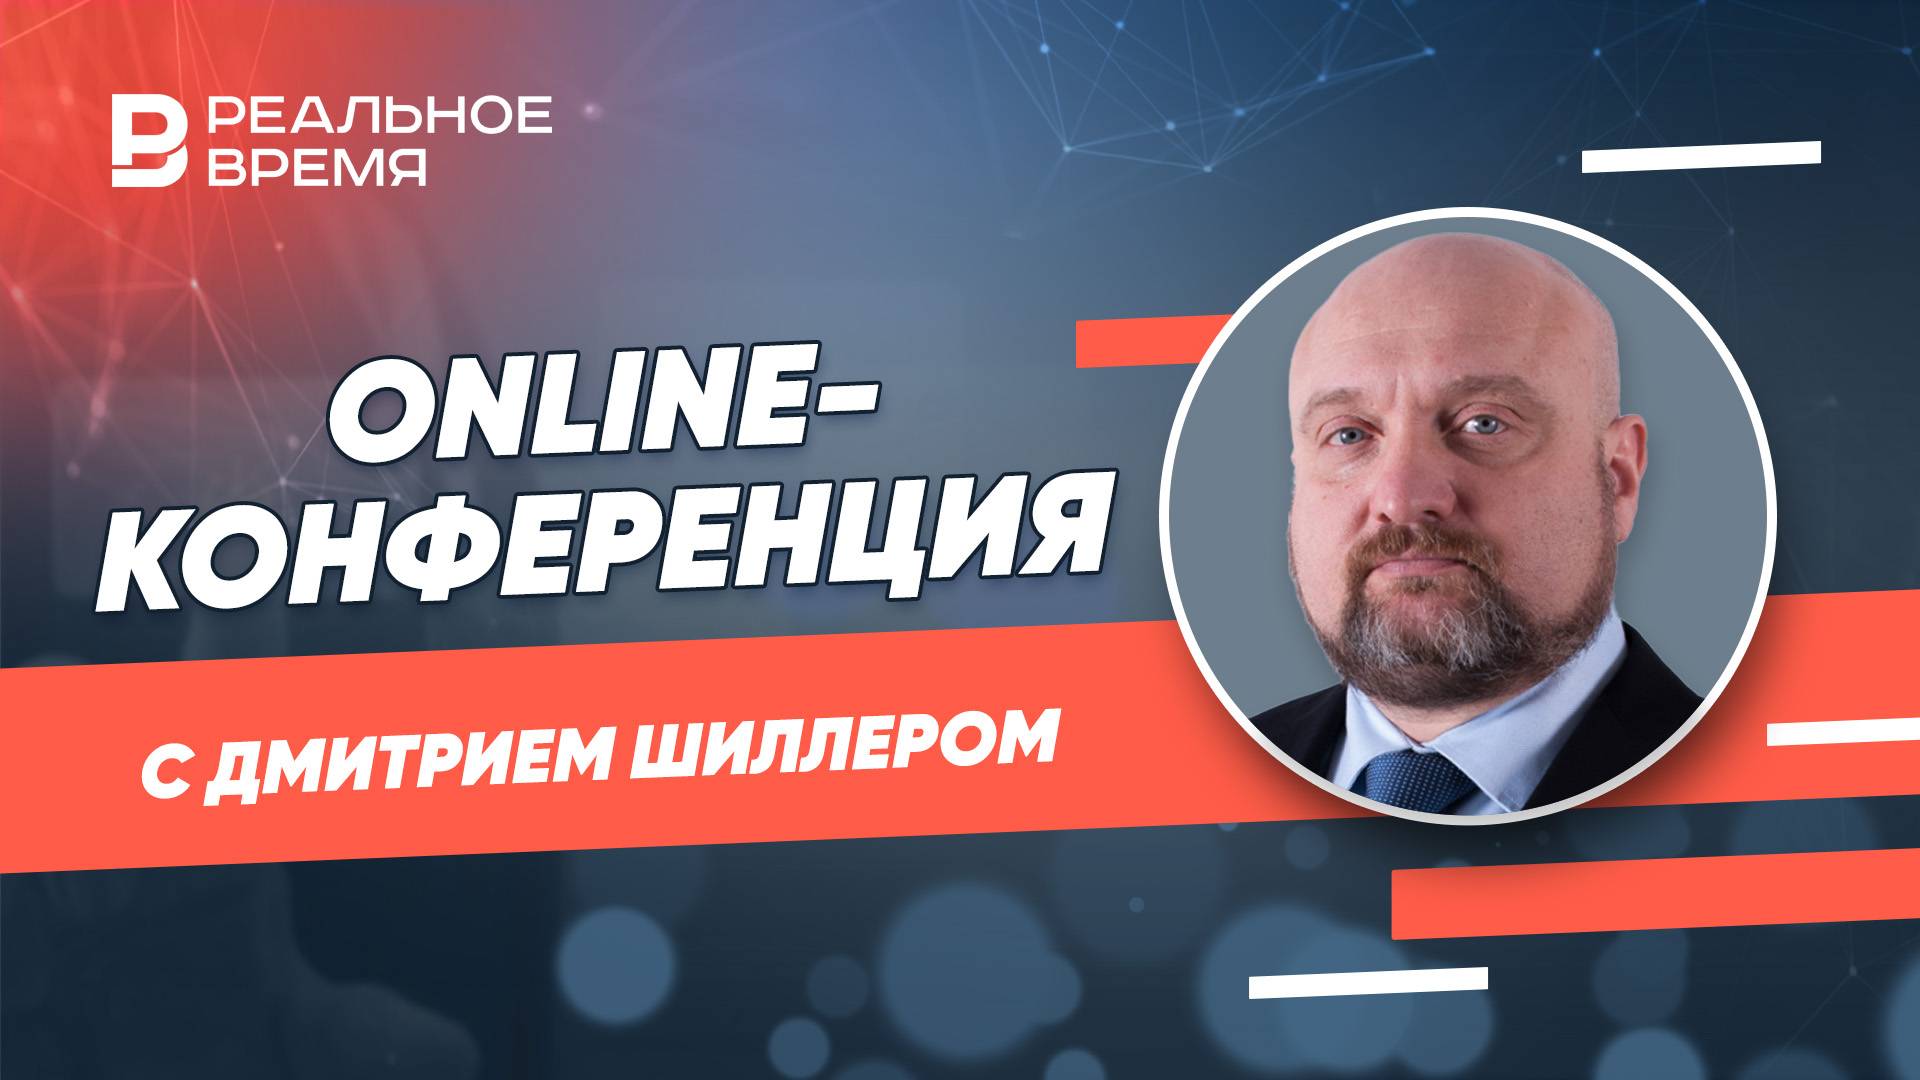 Online-конференция с Дмитрием Шиллером, Председателем регионального отделения Русского географическо